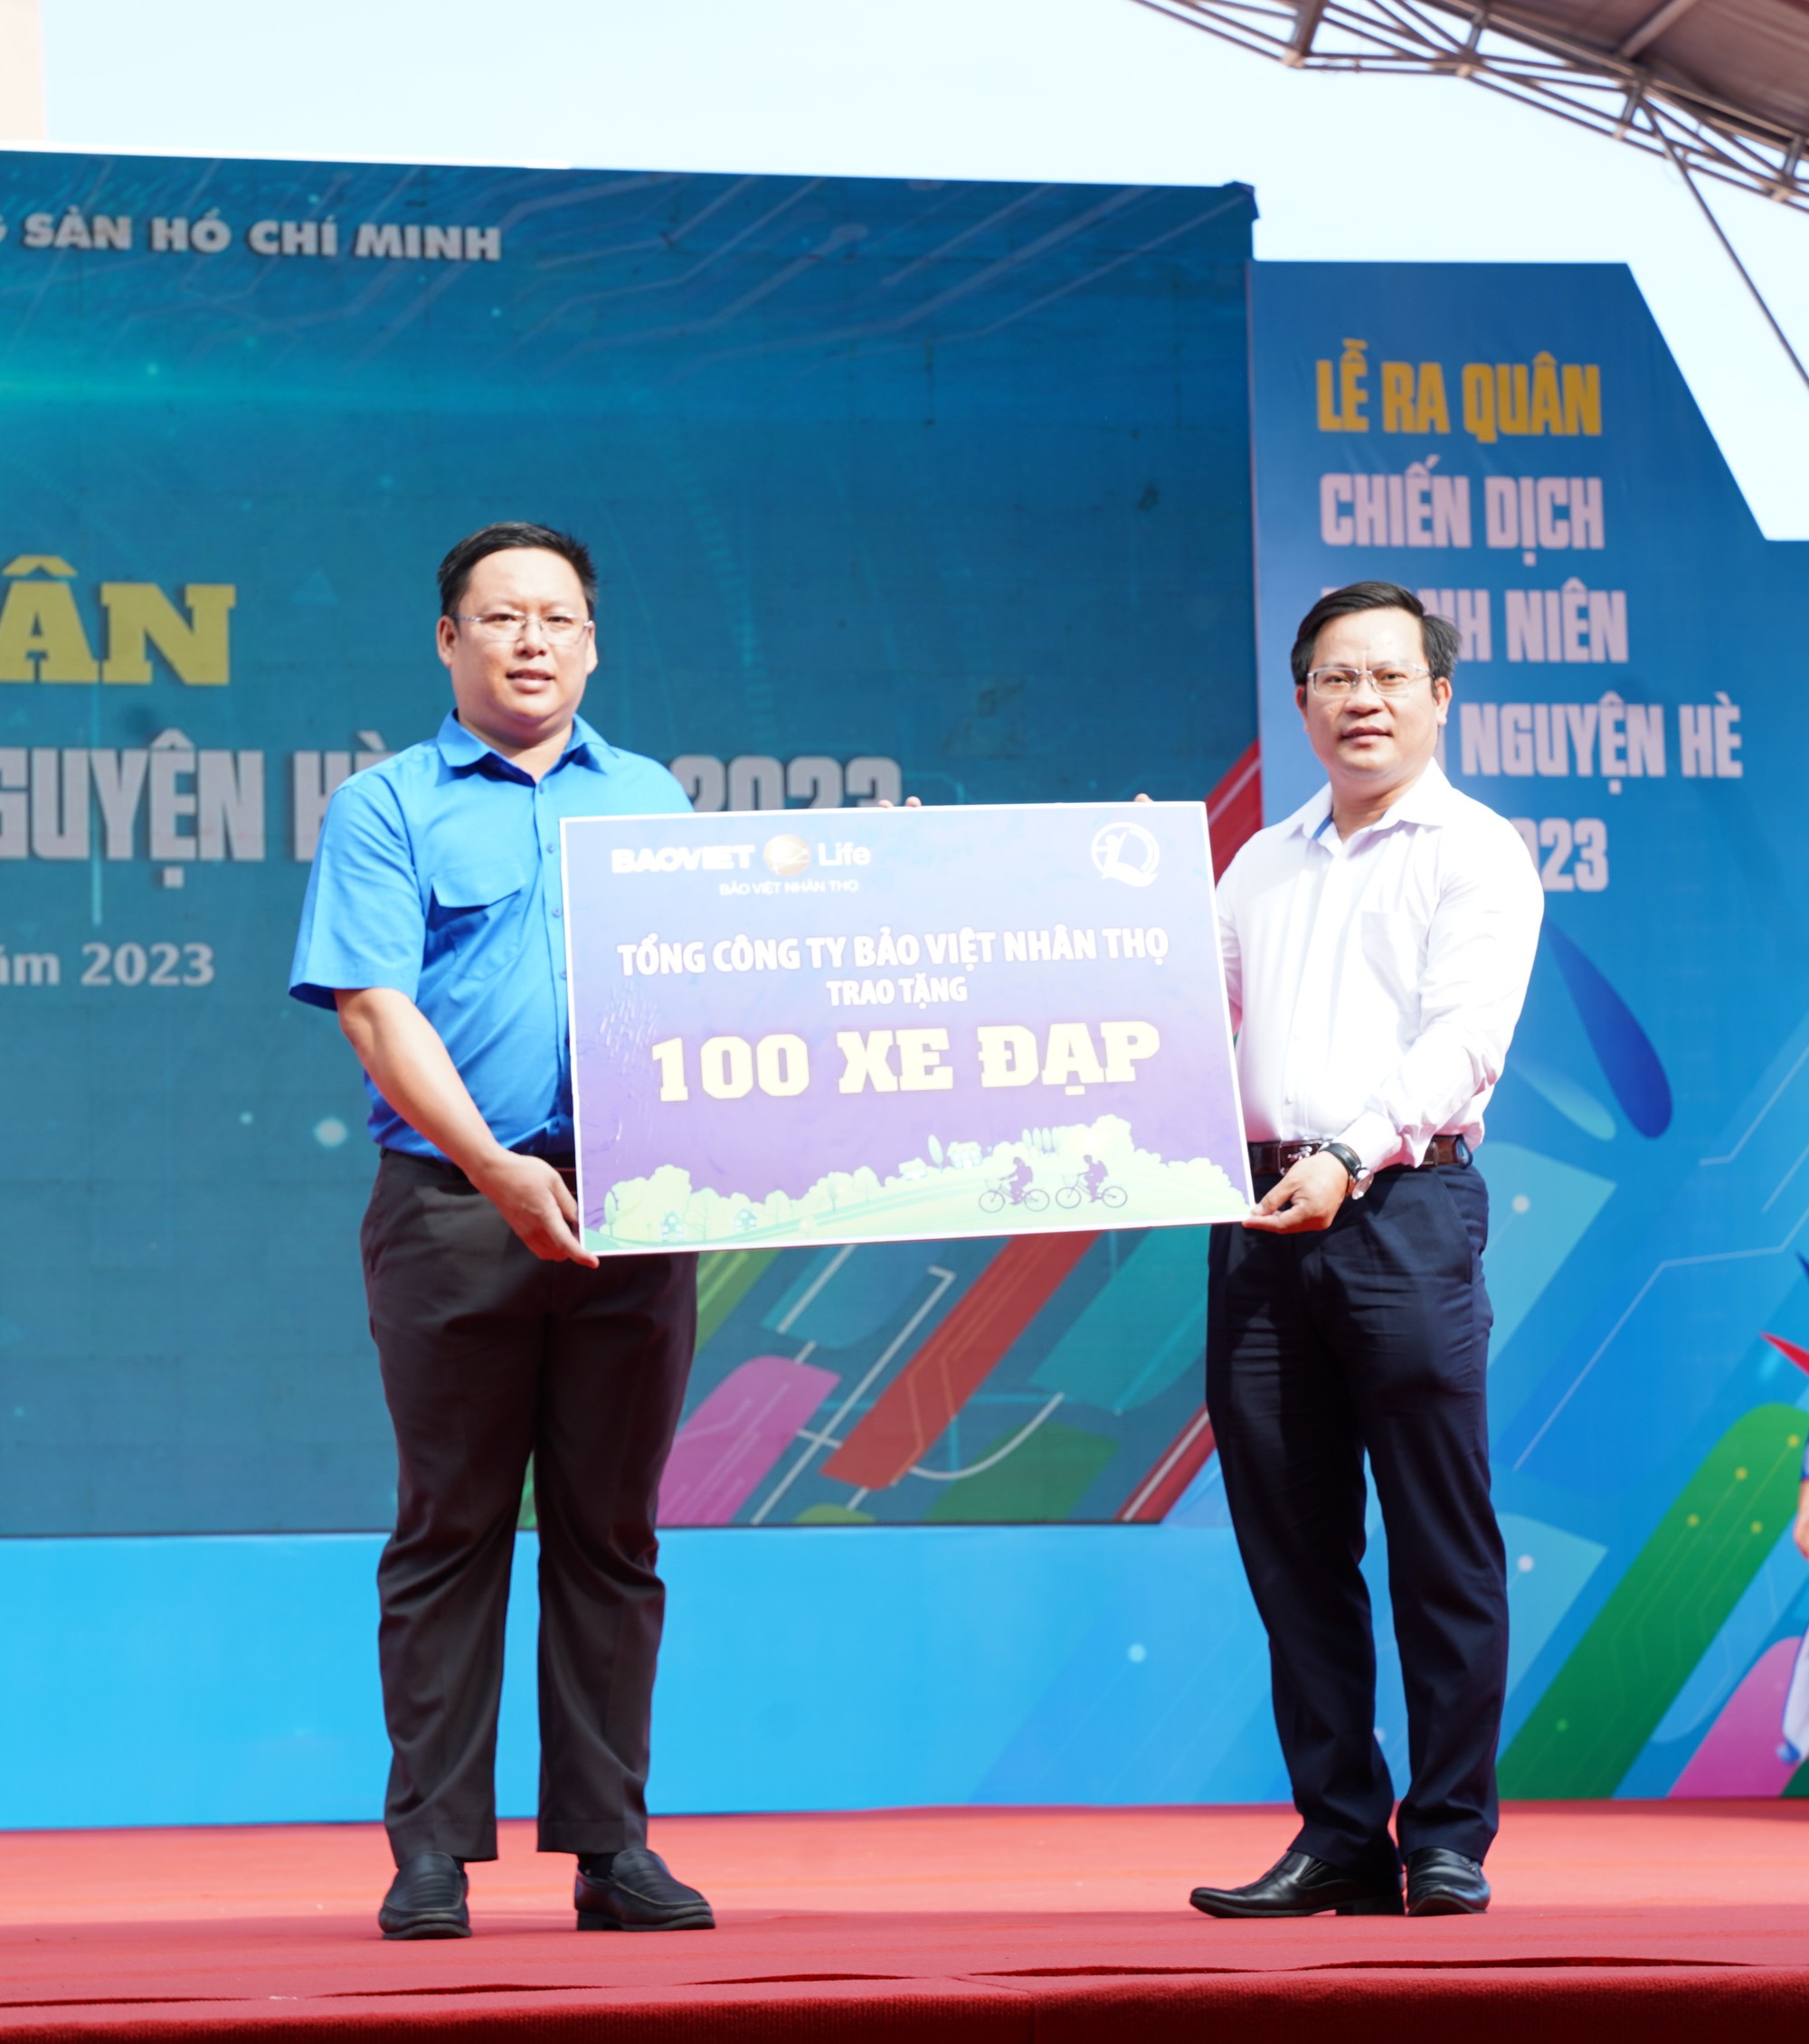 Bảo Việt Nhân thọ trao 200 xe đạp cho trẻ em nghèo hiếu học - Ảnh 1.